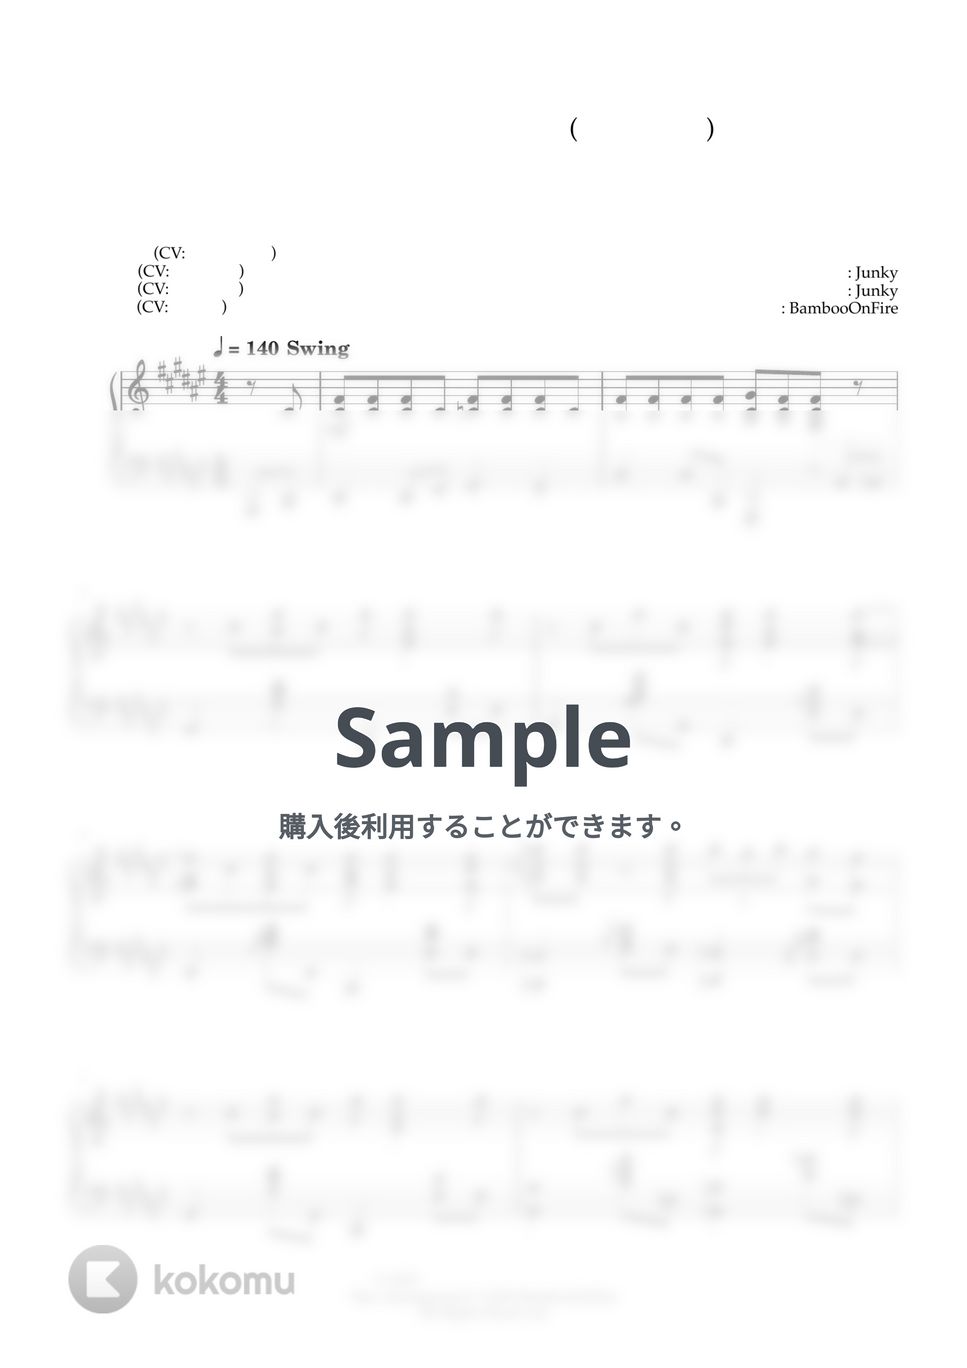 先輩がうざい後輩の話 - アノーイング! さんさんウィーク! (My Senpai is Annoying OP) by BambooOnFire's Music Lab